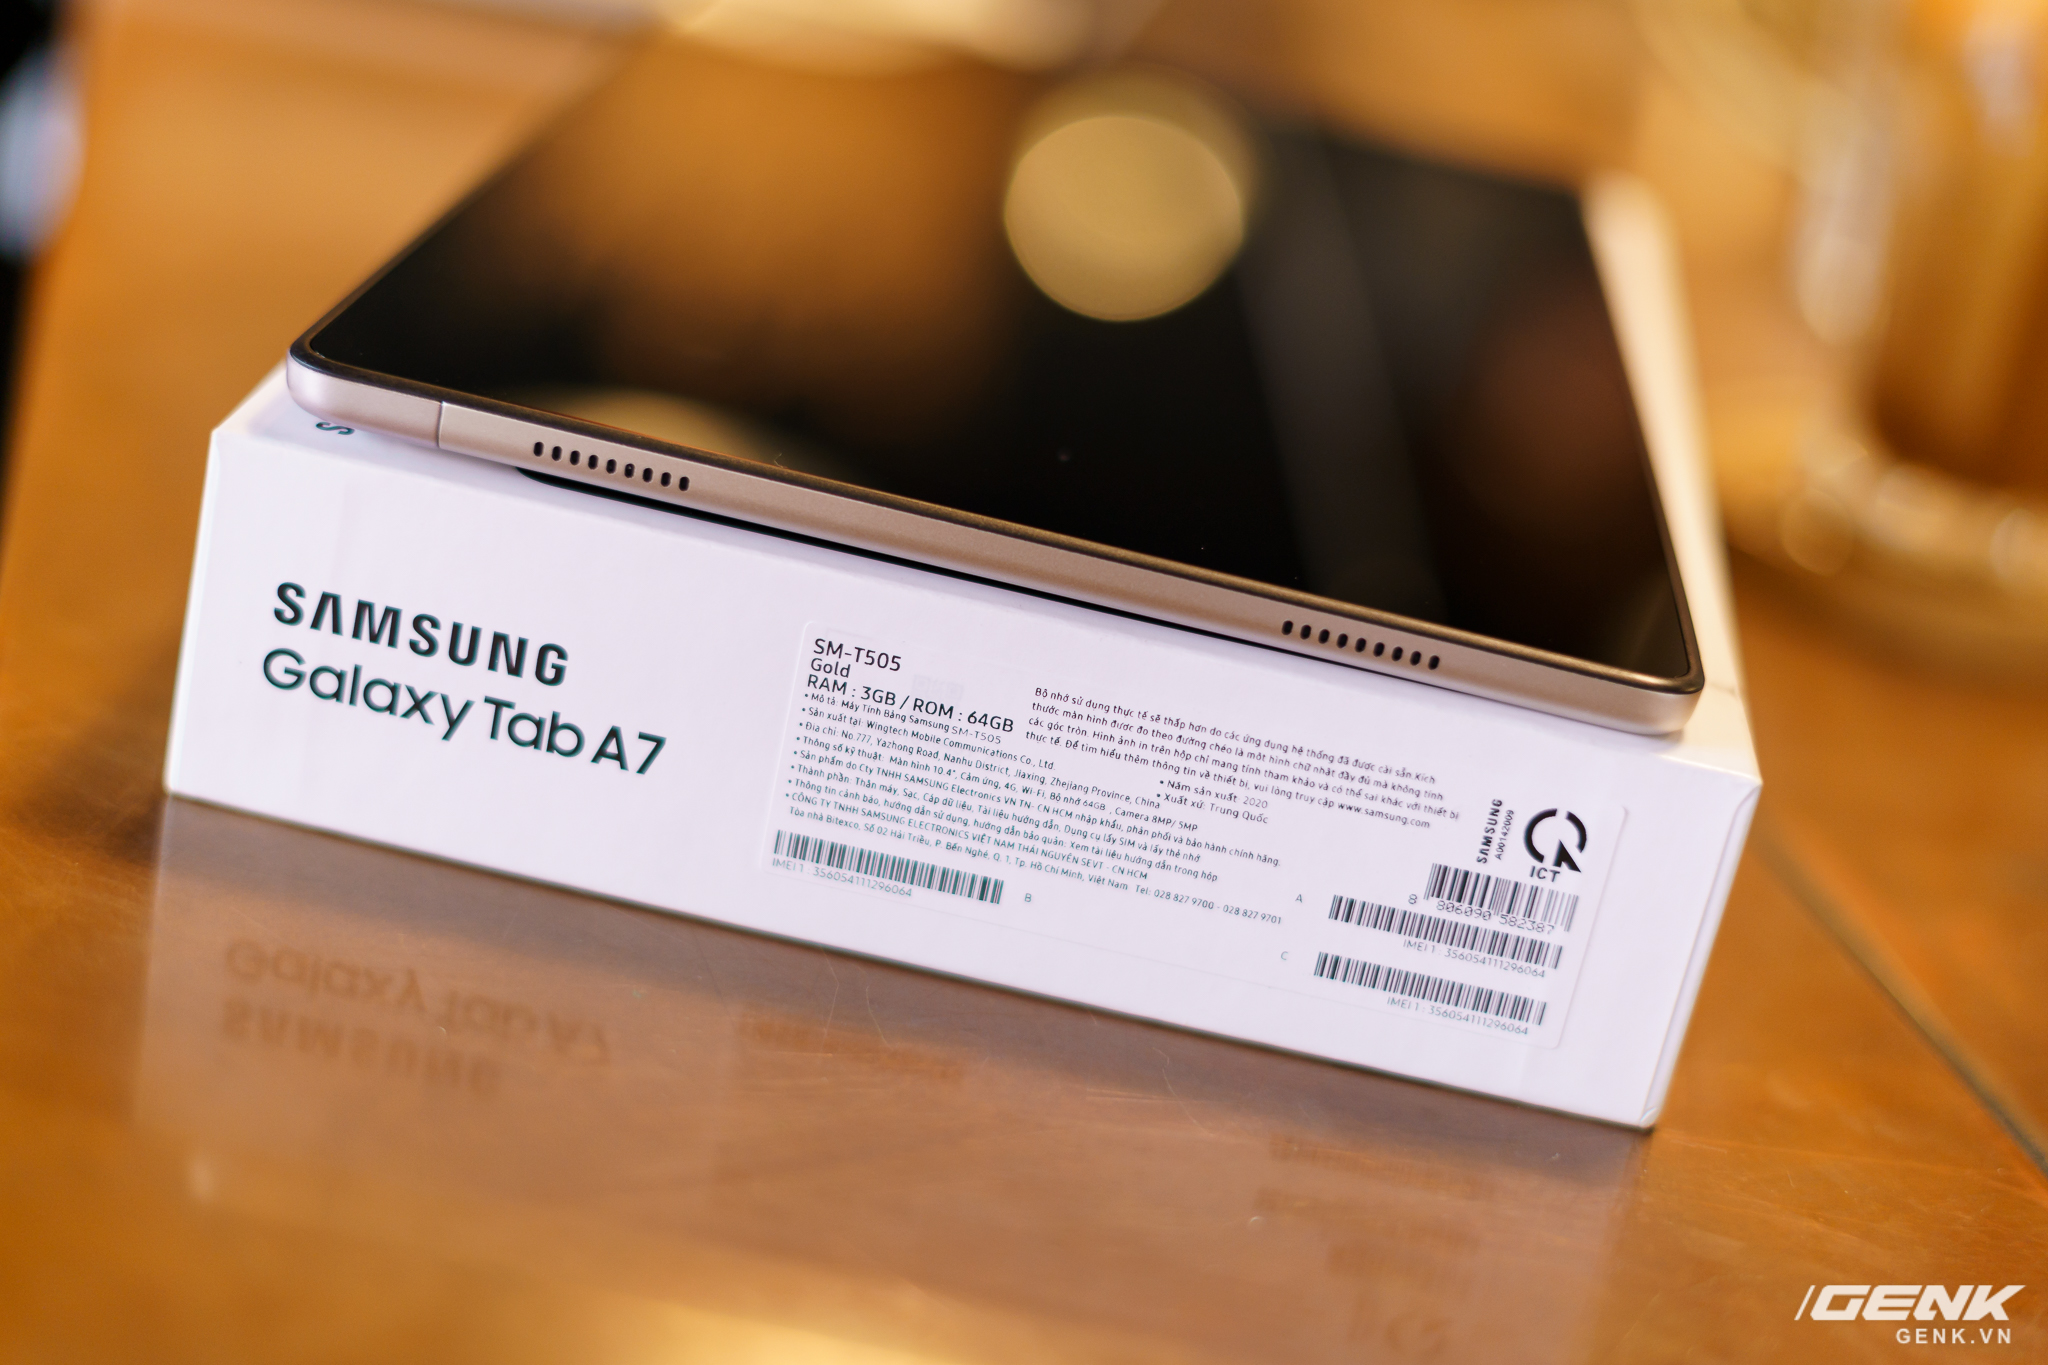 Mở hộp Samsung Galaxy Tab A7: thiết kế pha lẫn hoài cổ và hiện đại, loa là điểm mạnh - Ảnh 12.